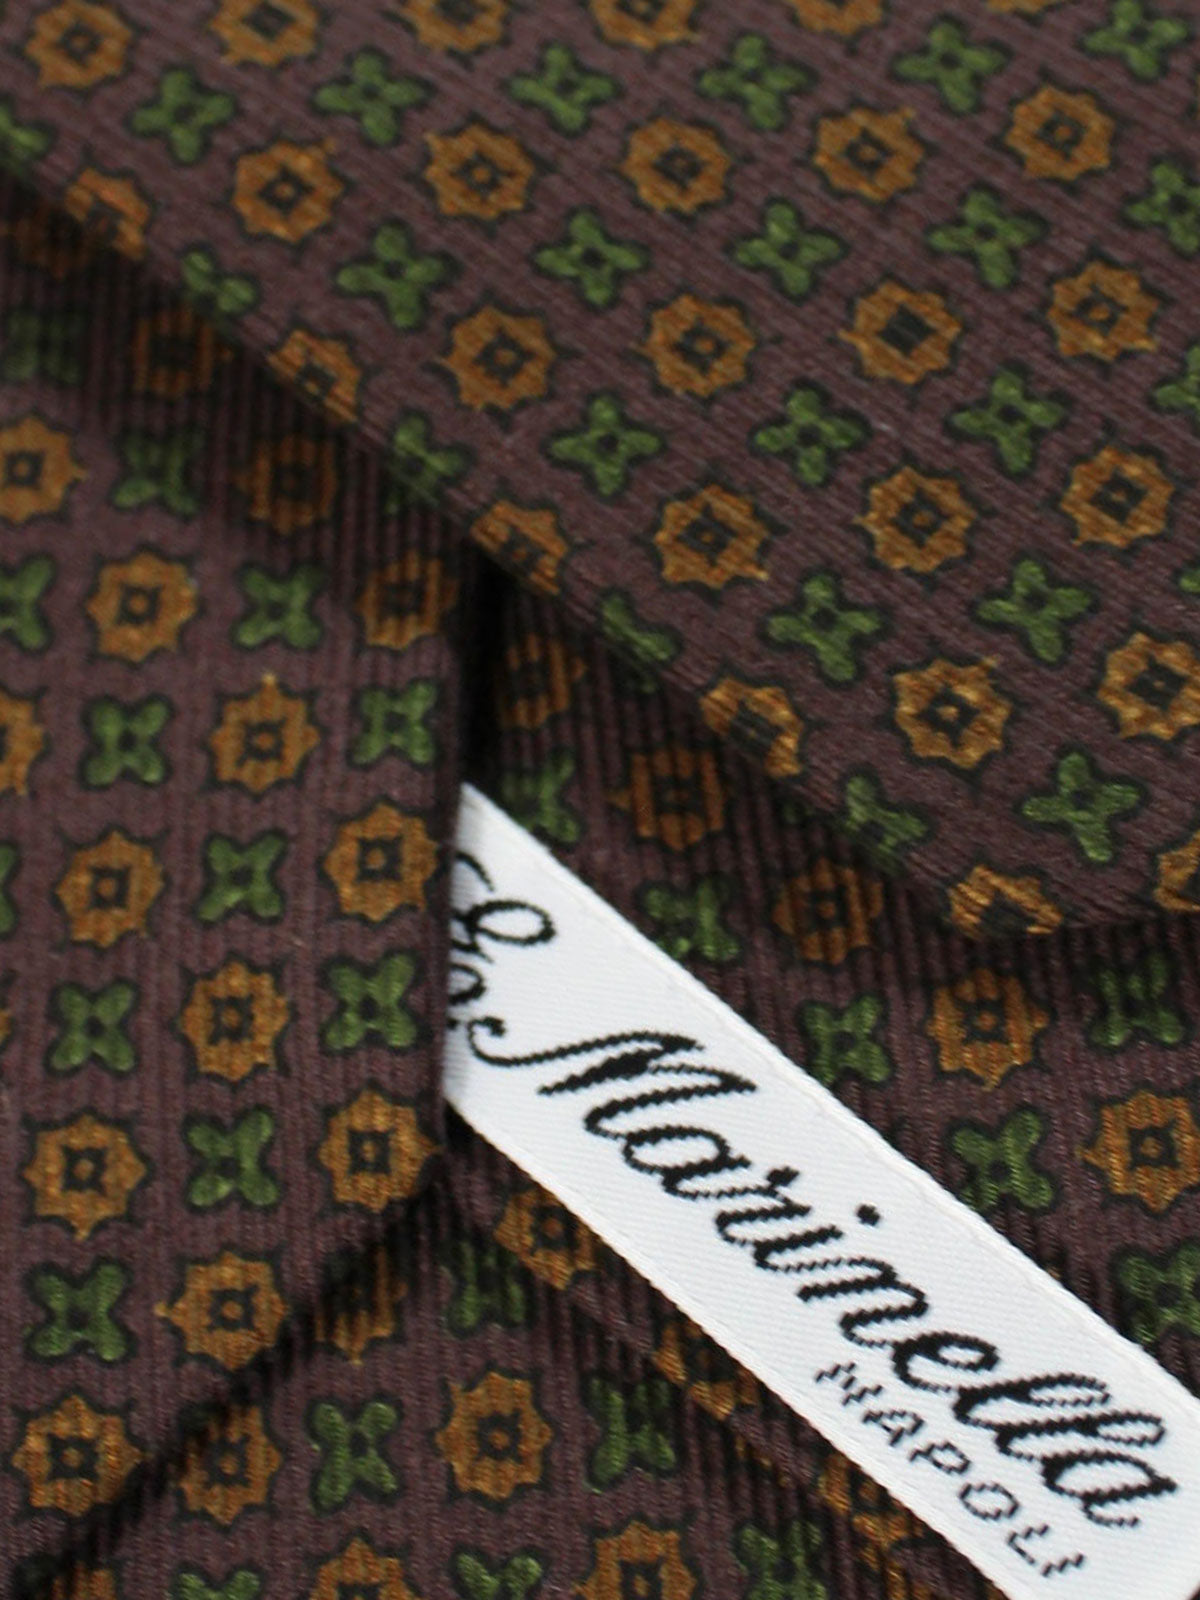 Marinella Silk Tie Brown Green Geometric - Narrow Necktie